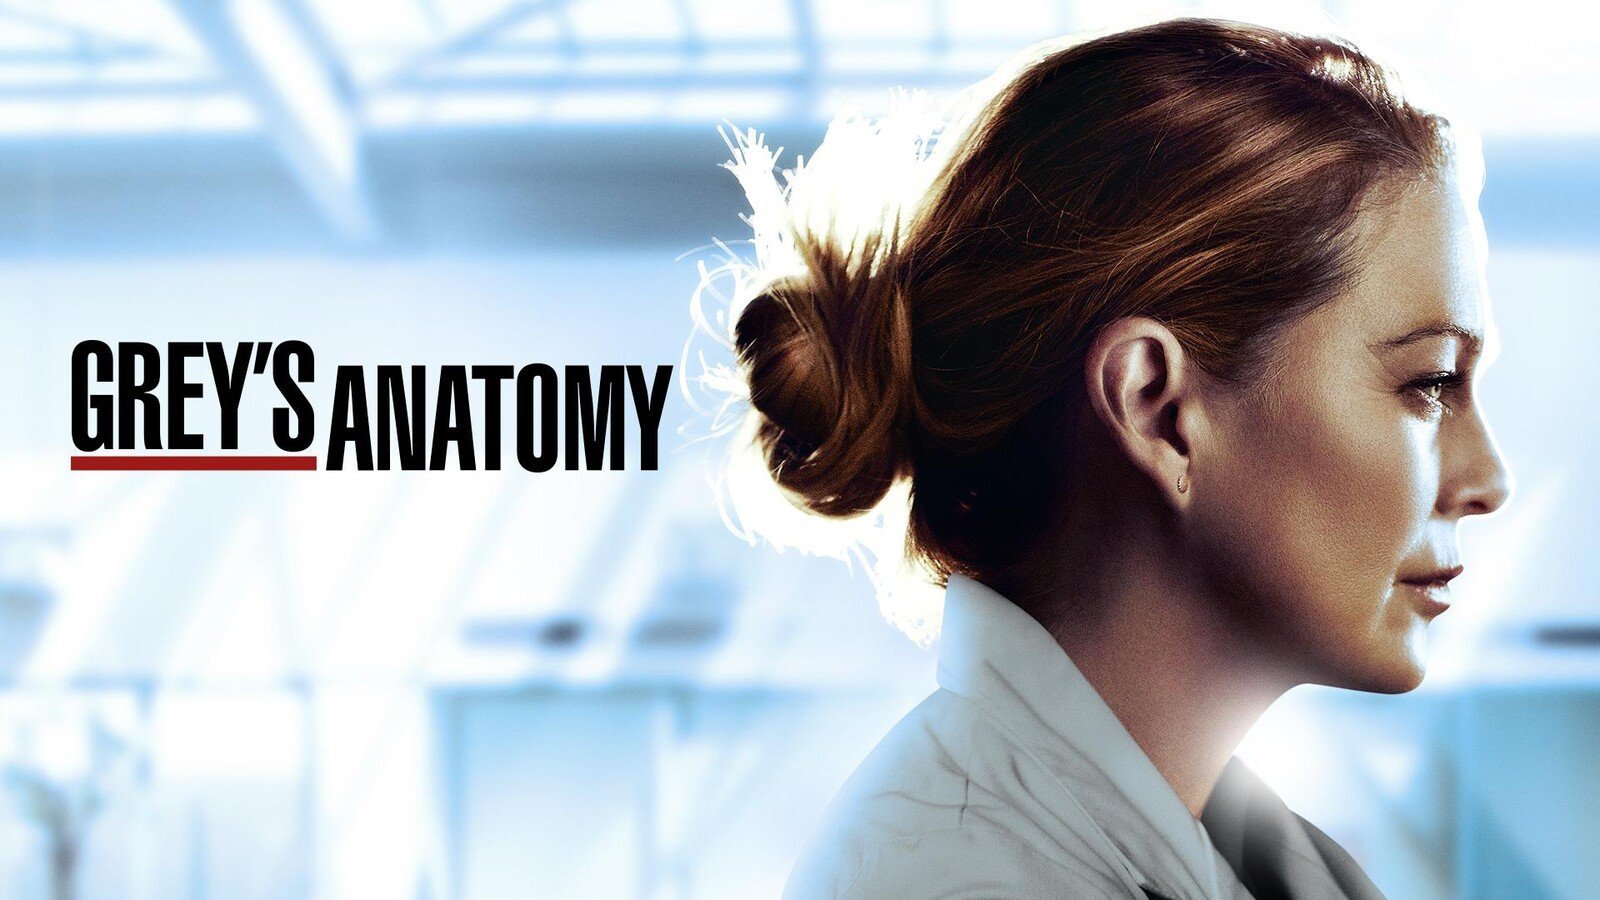 Pôster de divulgação da série 'Grey's Anatomy'.